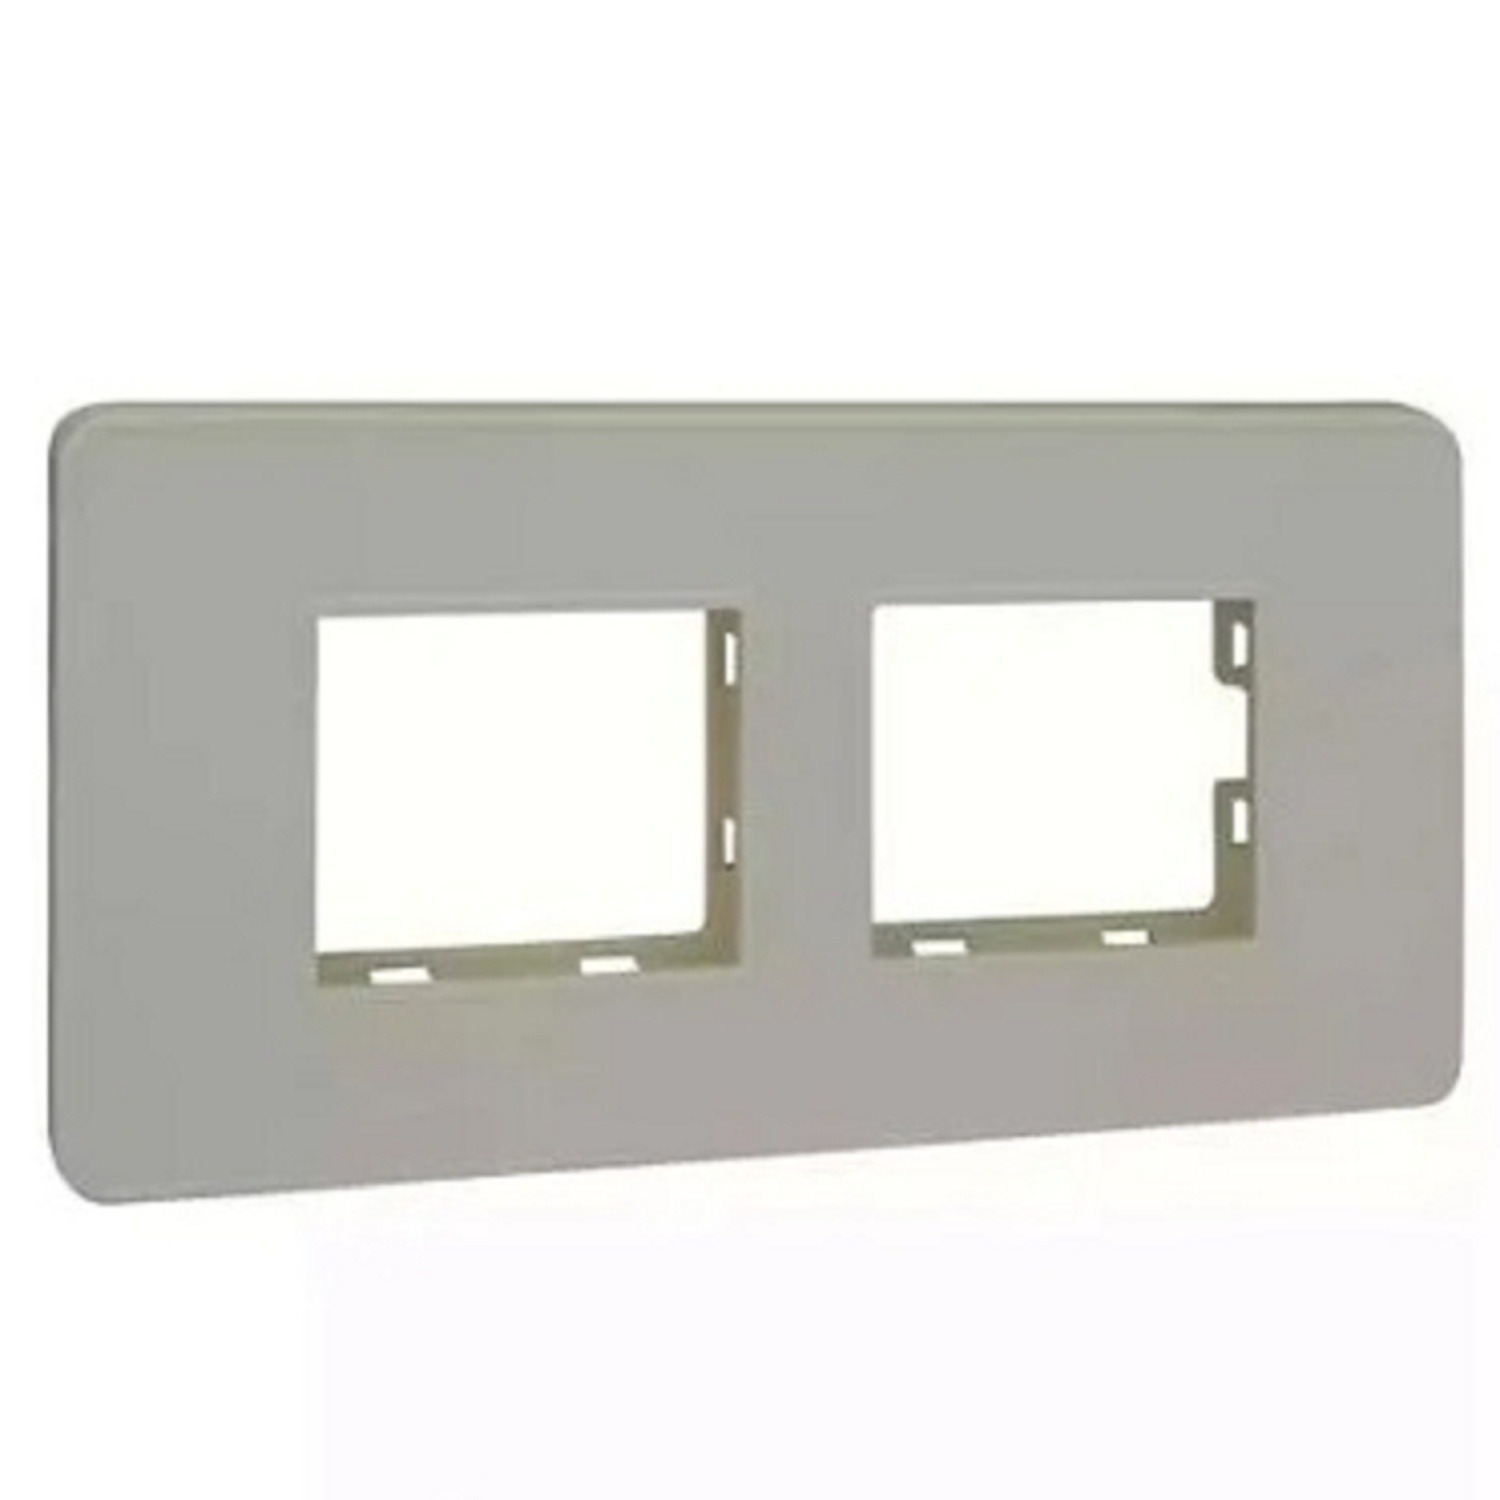  LT Engem  4 Module (Regular) Cover Plate with Base Frame- White